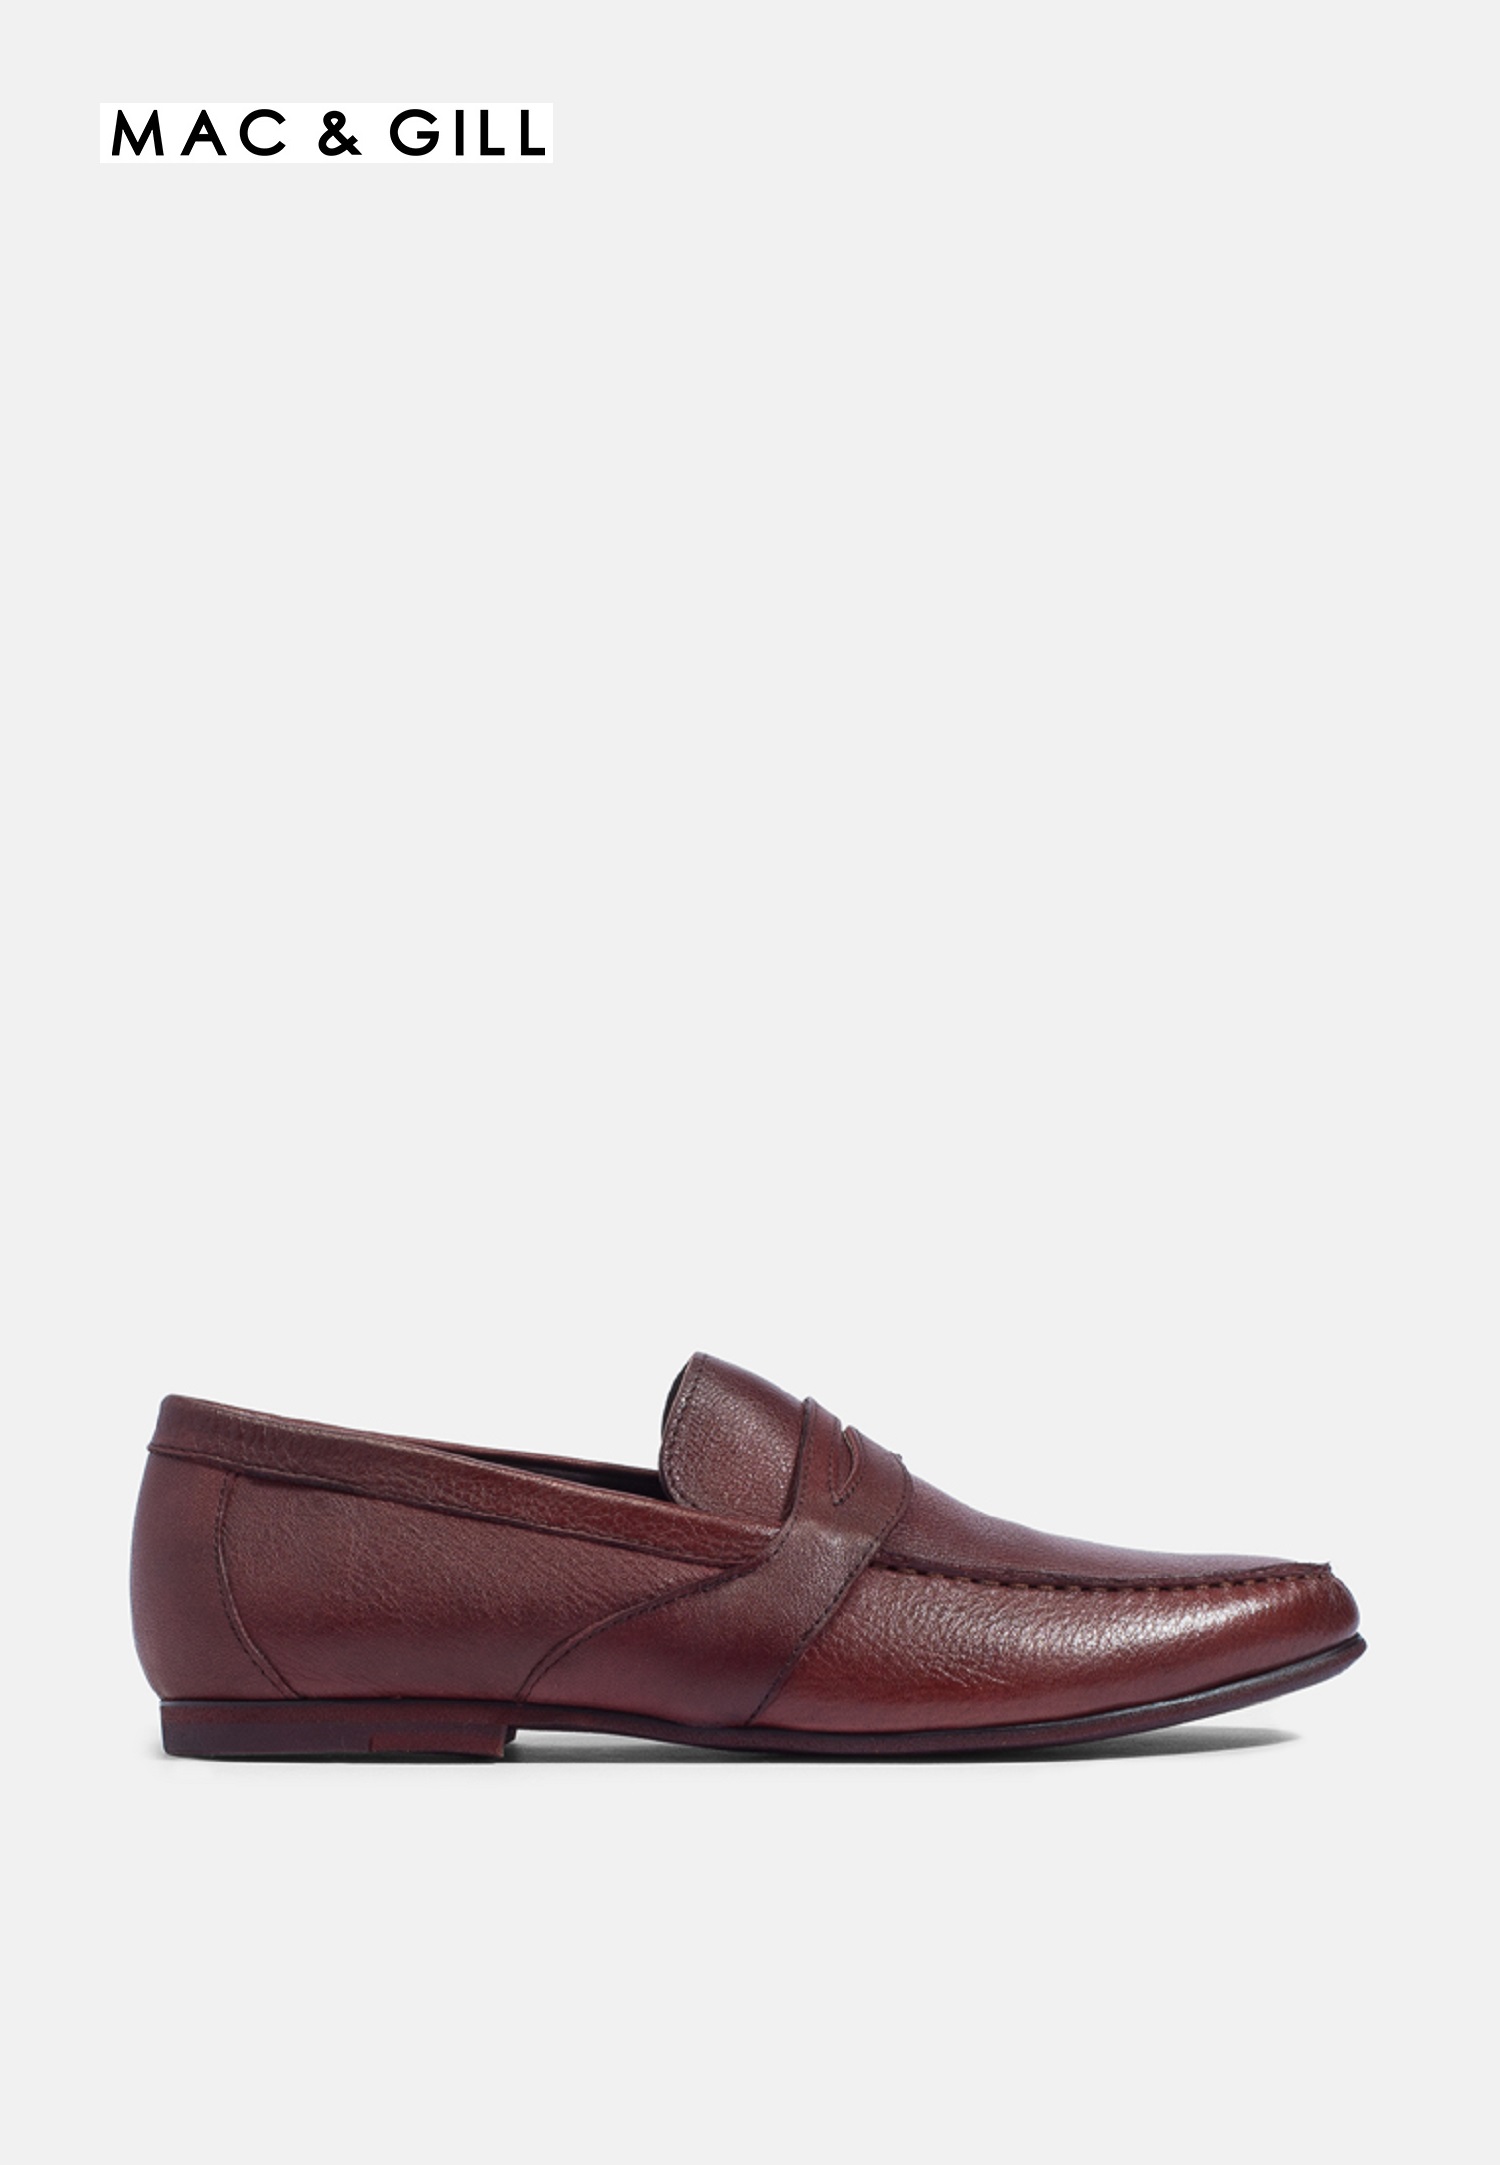 รองเท้าผู้ชายหนังแท้แบบโลฟเฟอร์ ANDY Leather Loafer For Casual and Formal Wear